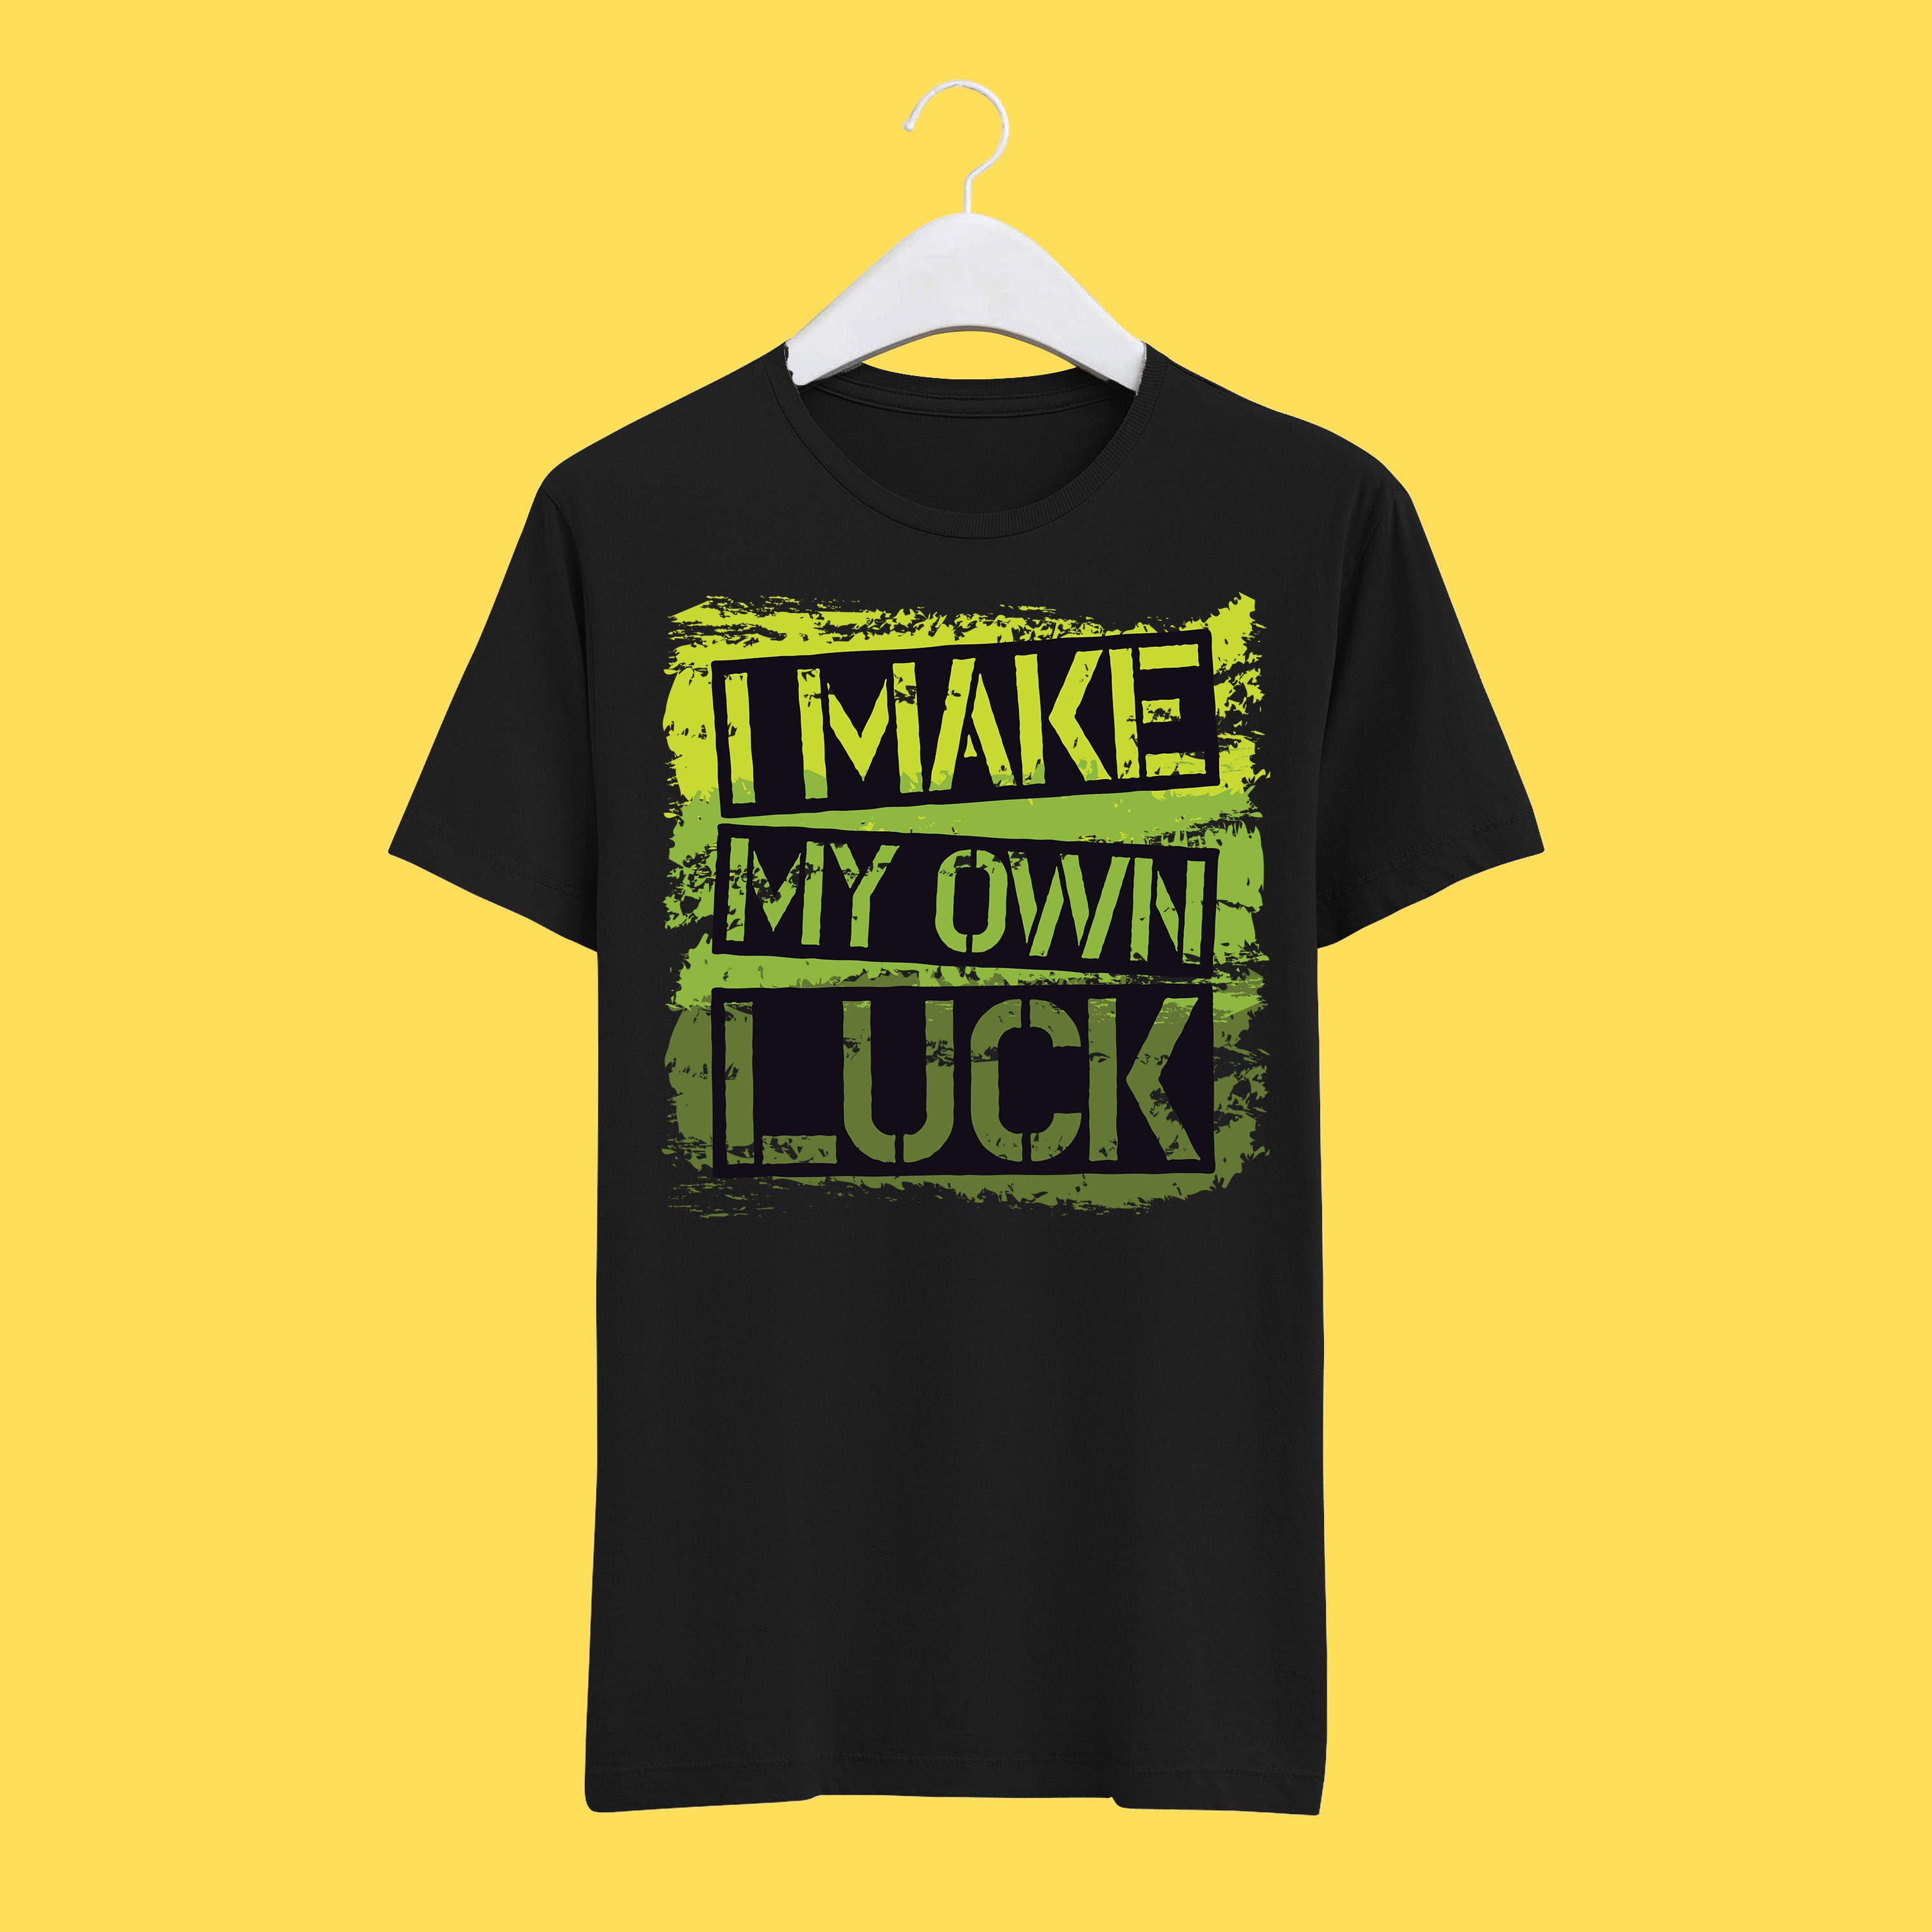 I My Own Luck T-Shirt –